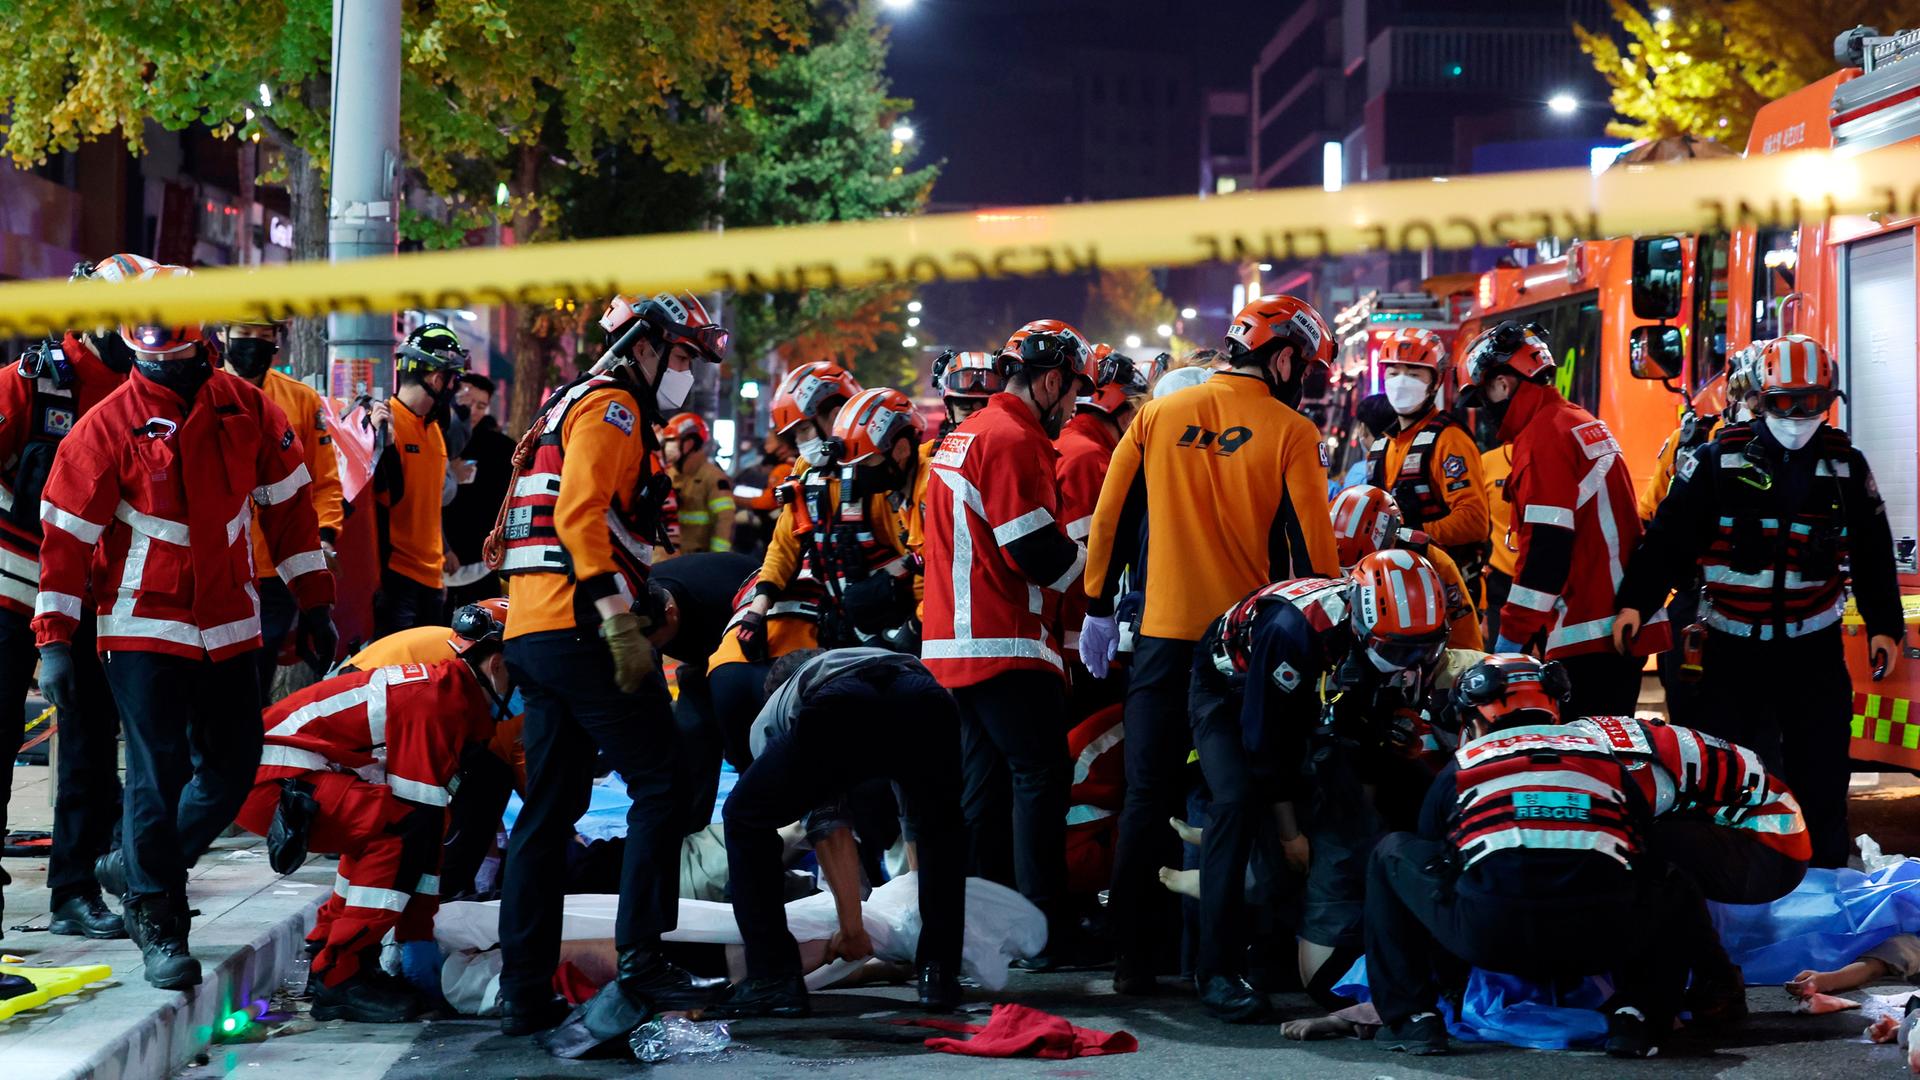 Auf dem Bild sind zahlreiche Rettungs-Kräfte mit Helmen und roten Jacken zu sehen.  Im Vordergrund ist ein gelbes Flatter-Band von der Polizei.